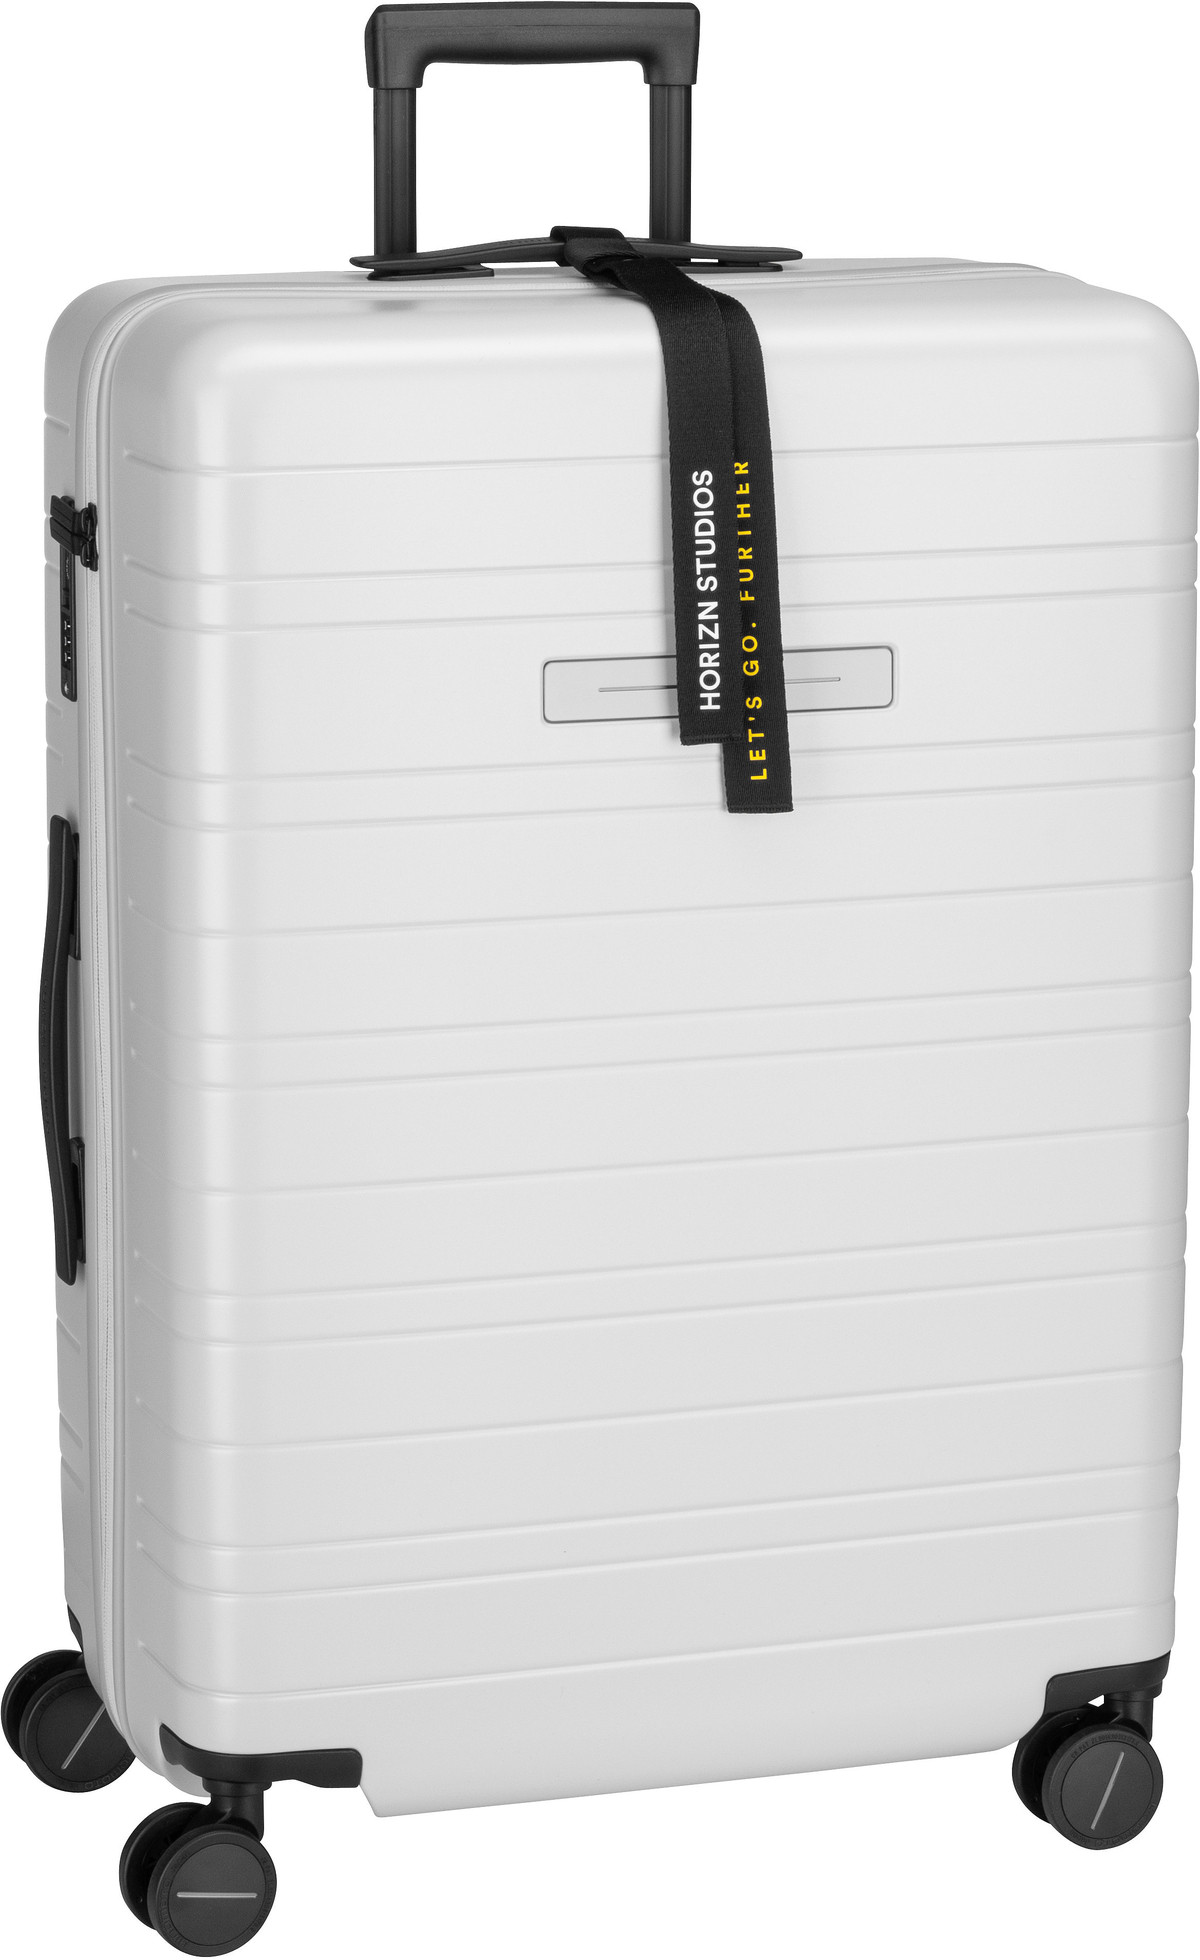 Horizn Studios H7 Essential Check-In Luggage - Light Quartz Grey